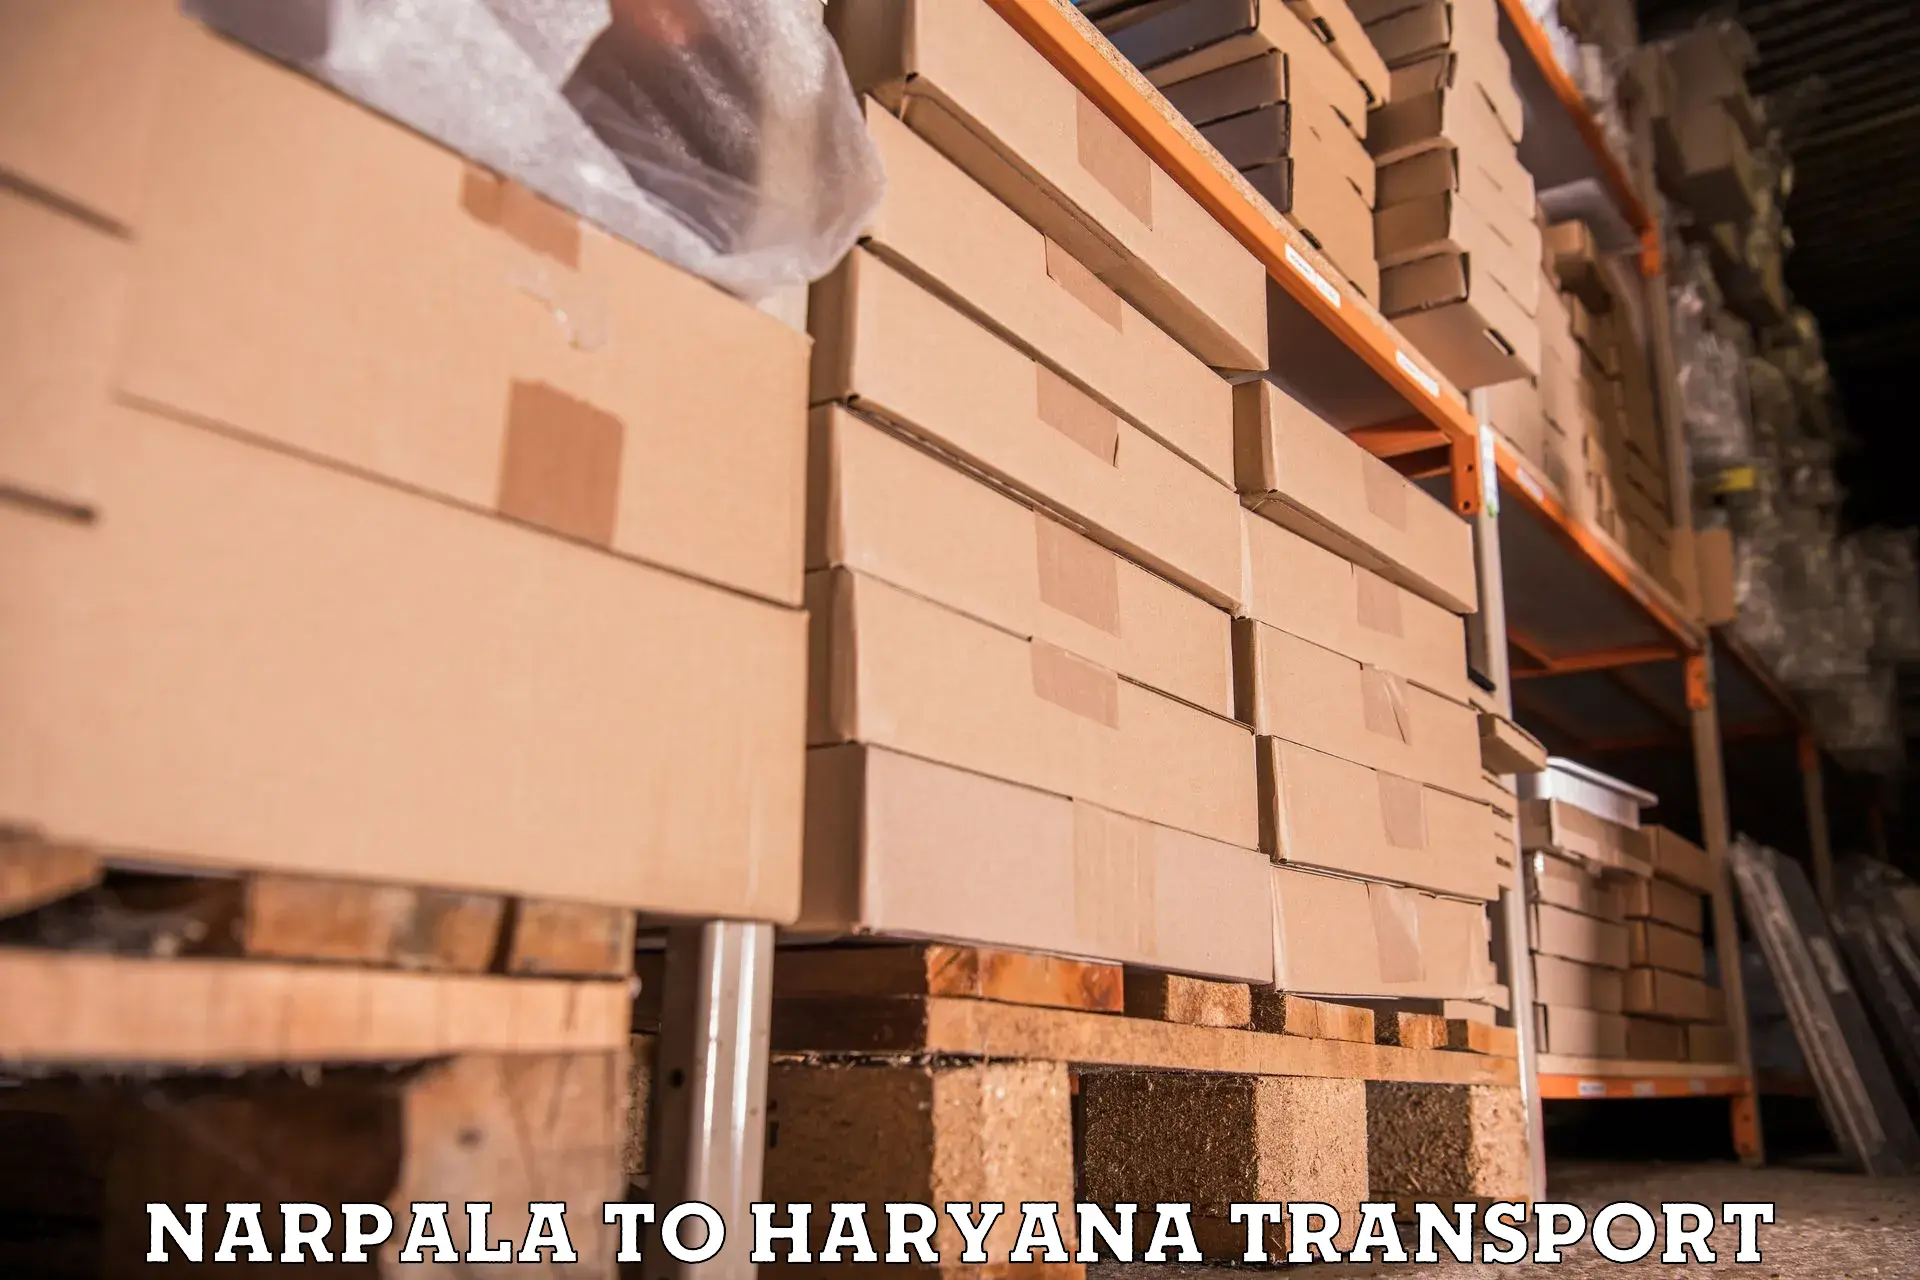 Nearest transport service Narpala to NCR Haryana